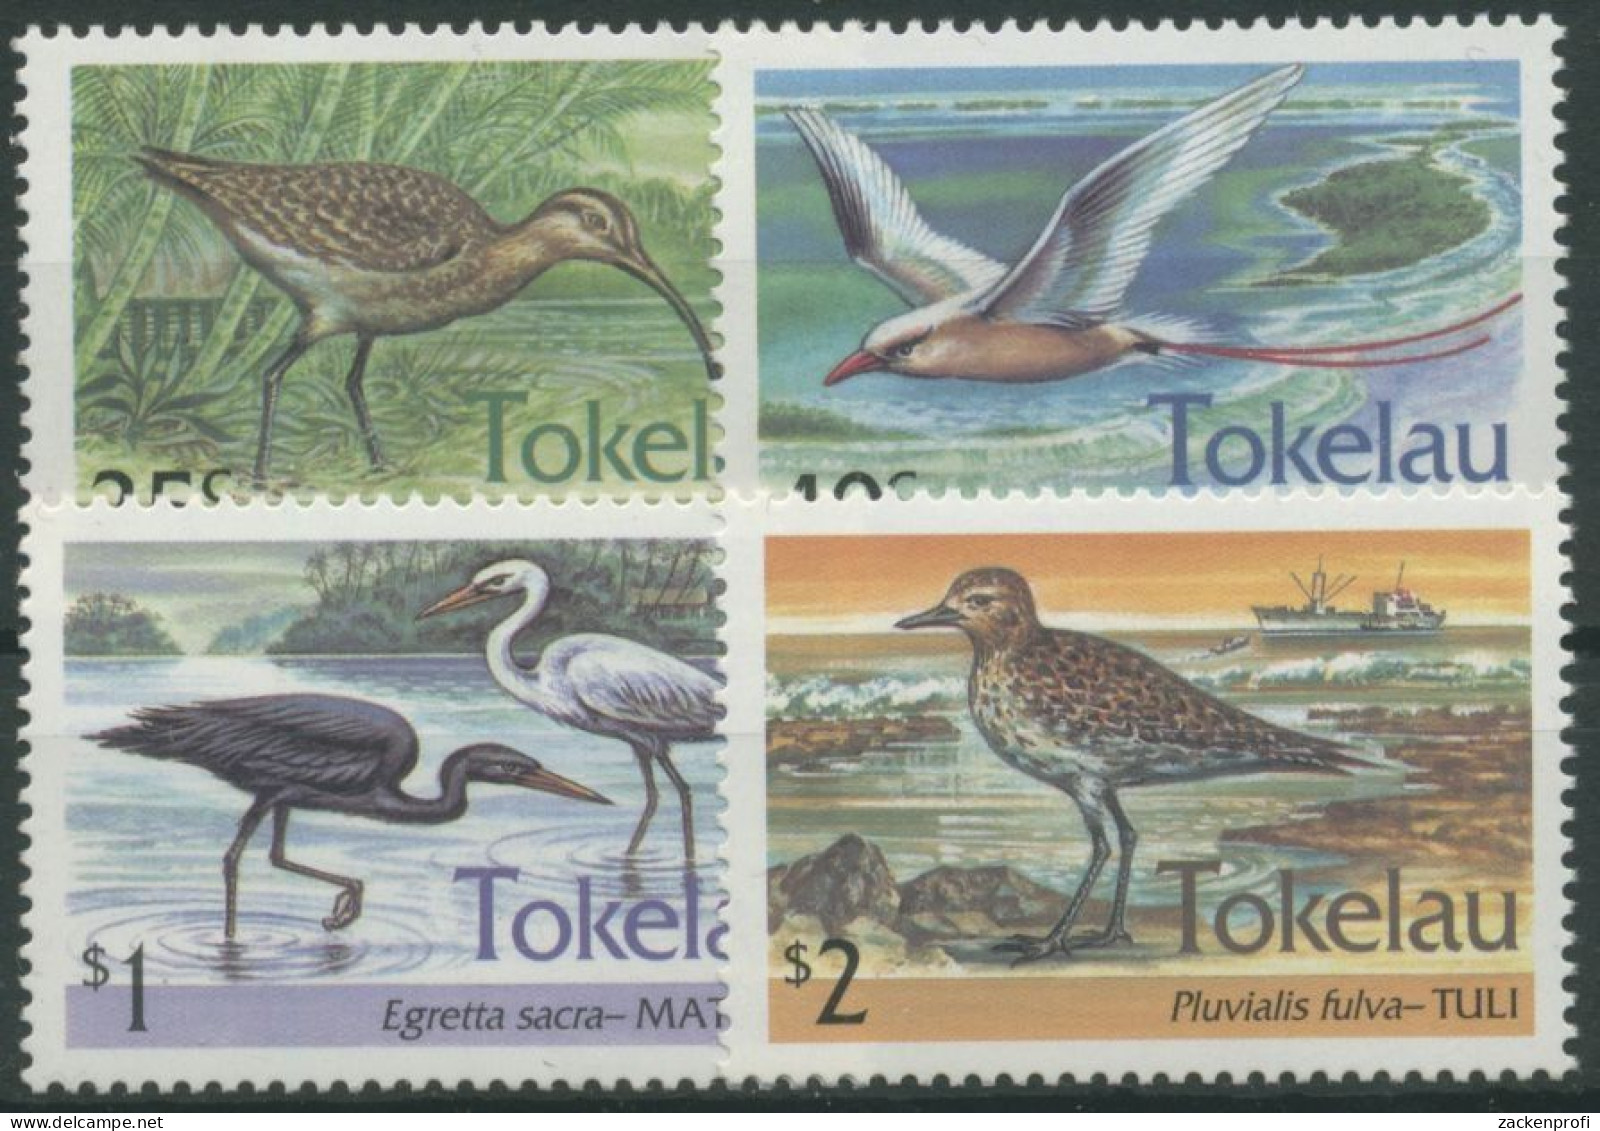 Tokelau 1993 Wasservogel Brachvogel Riffreiher Regenpfeiffer 196/99 Postfrisch - Tokelau